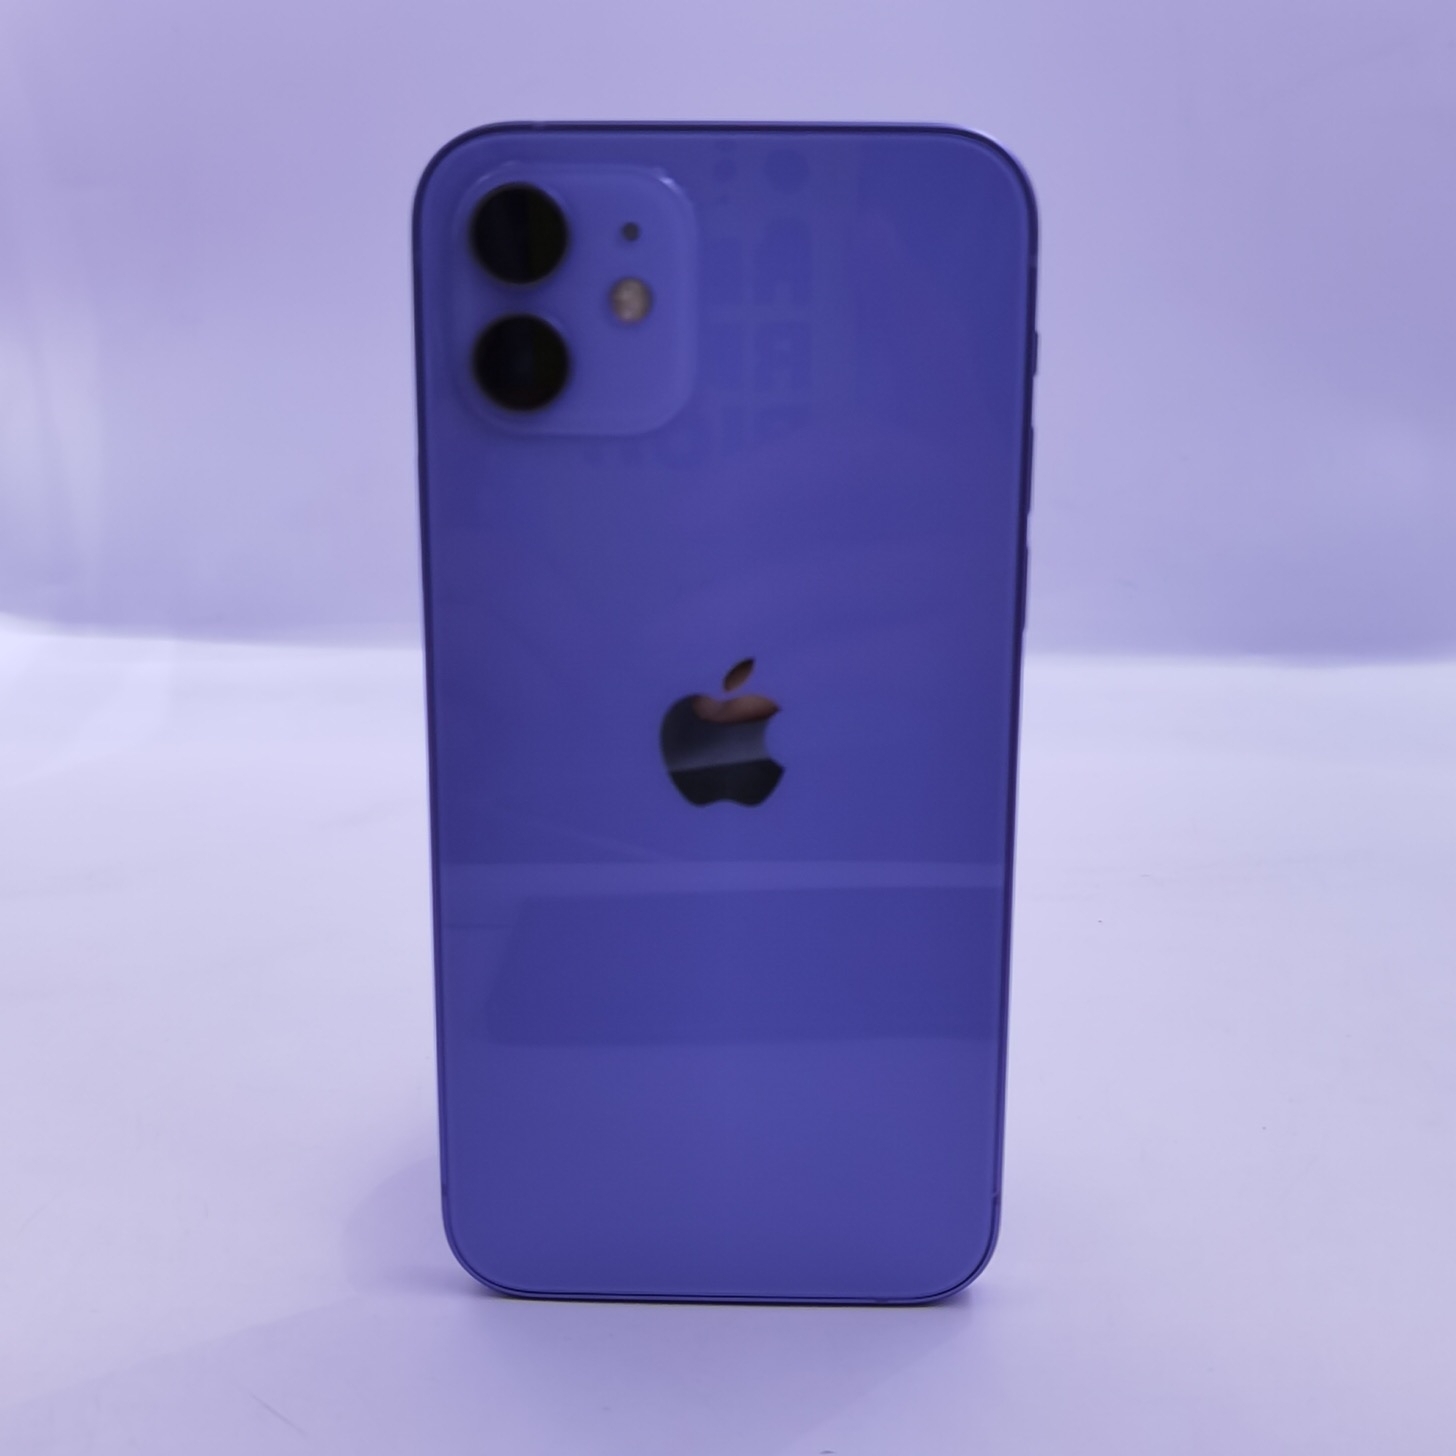 苹果【iPhone 12】5G全网通 紫色 128G 国行 全新 